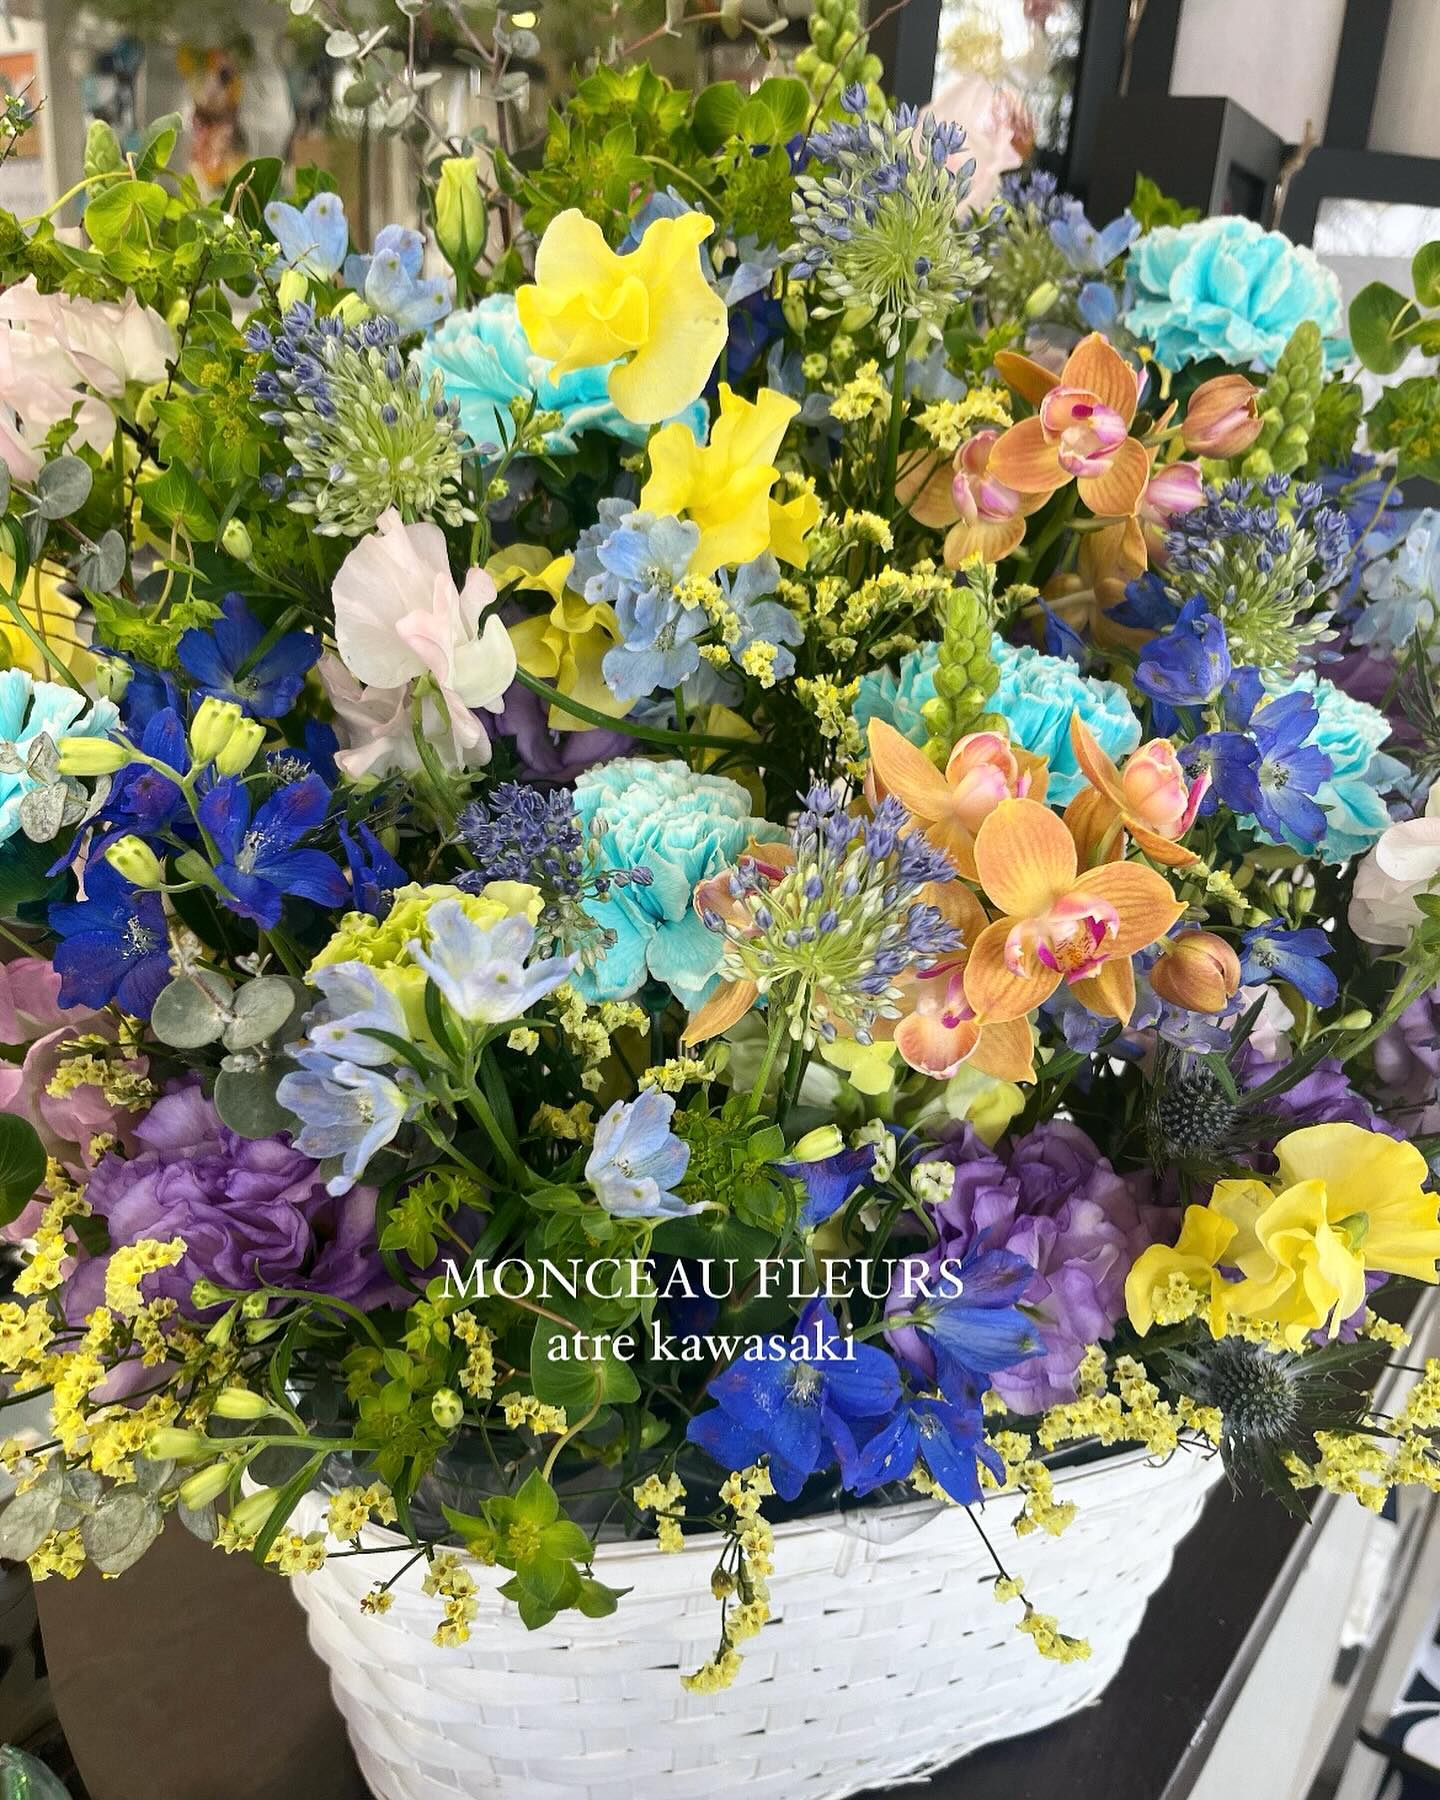 .

お供えのアレンジメント
お客様ご希望のカラーとお花でおまとめしました。
ご注文ありがとうございました。

春のお彼岸、お供えのお花たくさんご用意しております